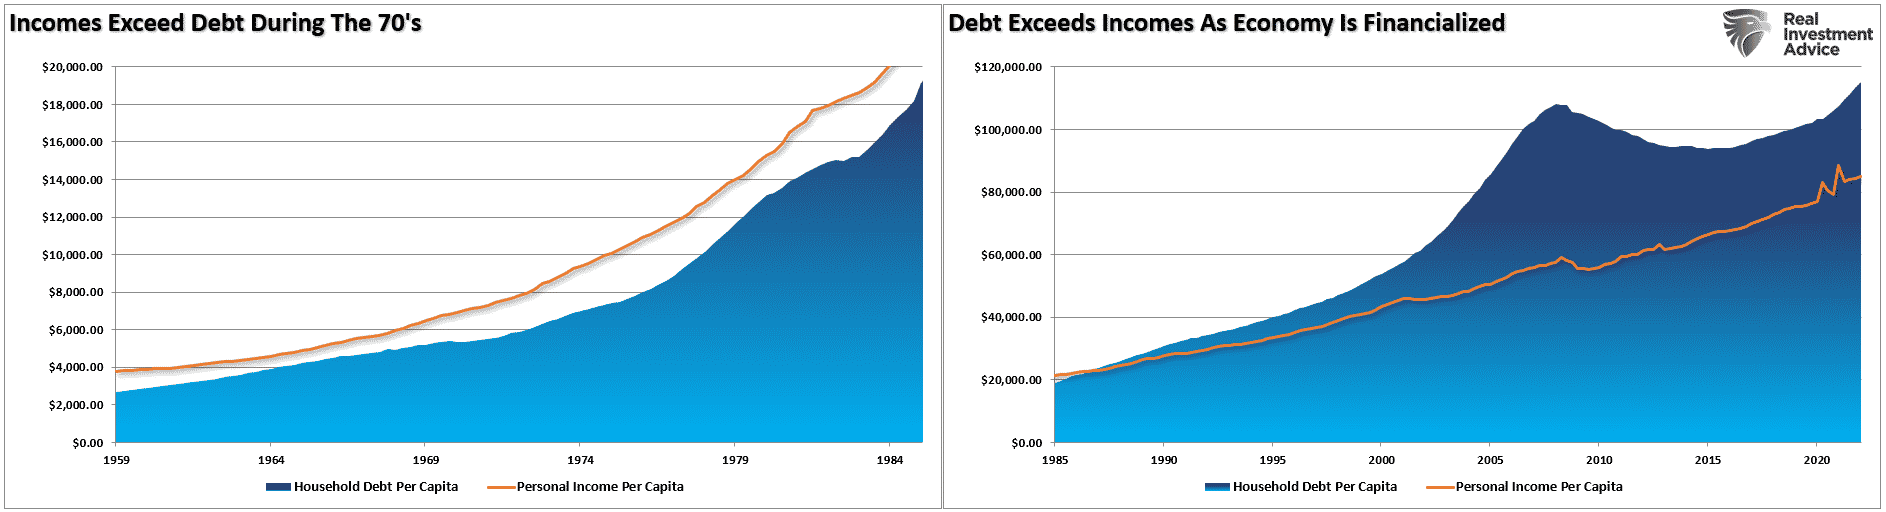 Descripción: Debt vs Incomes